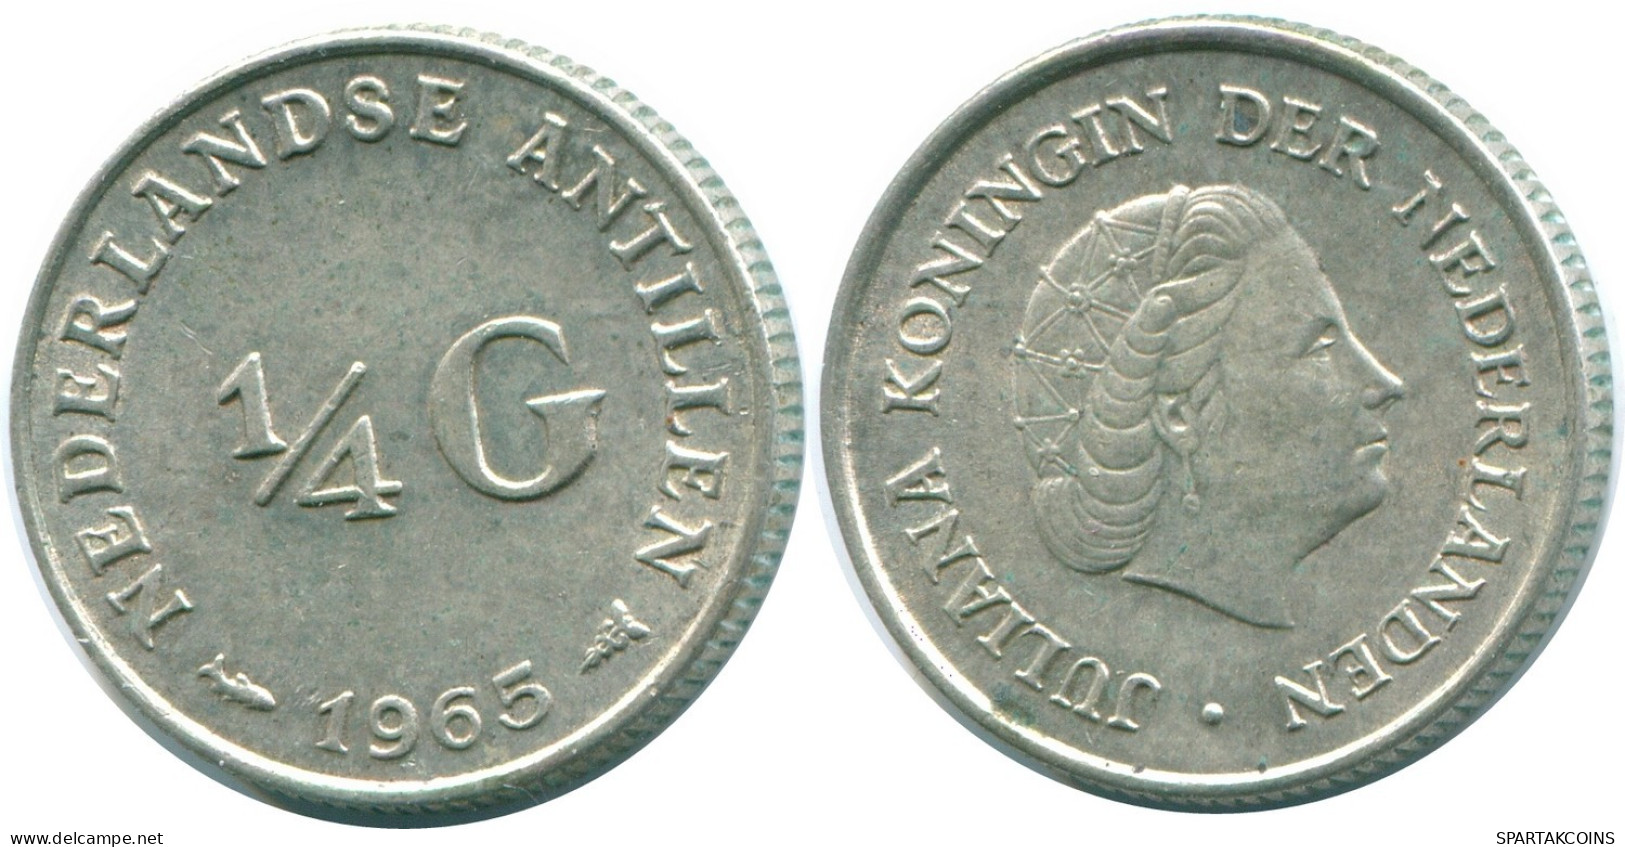 1/4 GULDEN 1965 NIEDERLÄNDISCHE ANTILLEN SILBER Koloniale Münze #NL11275.4.D.A - Antille Olandesi